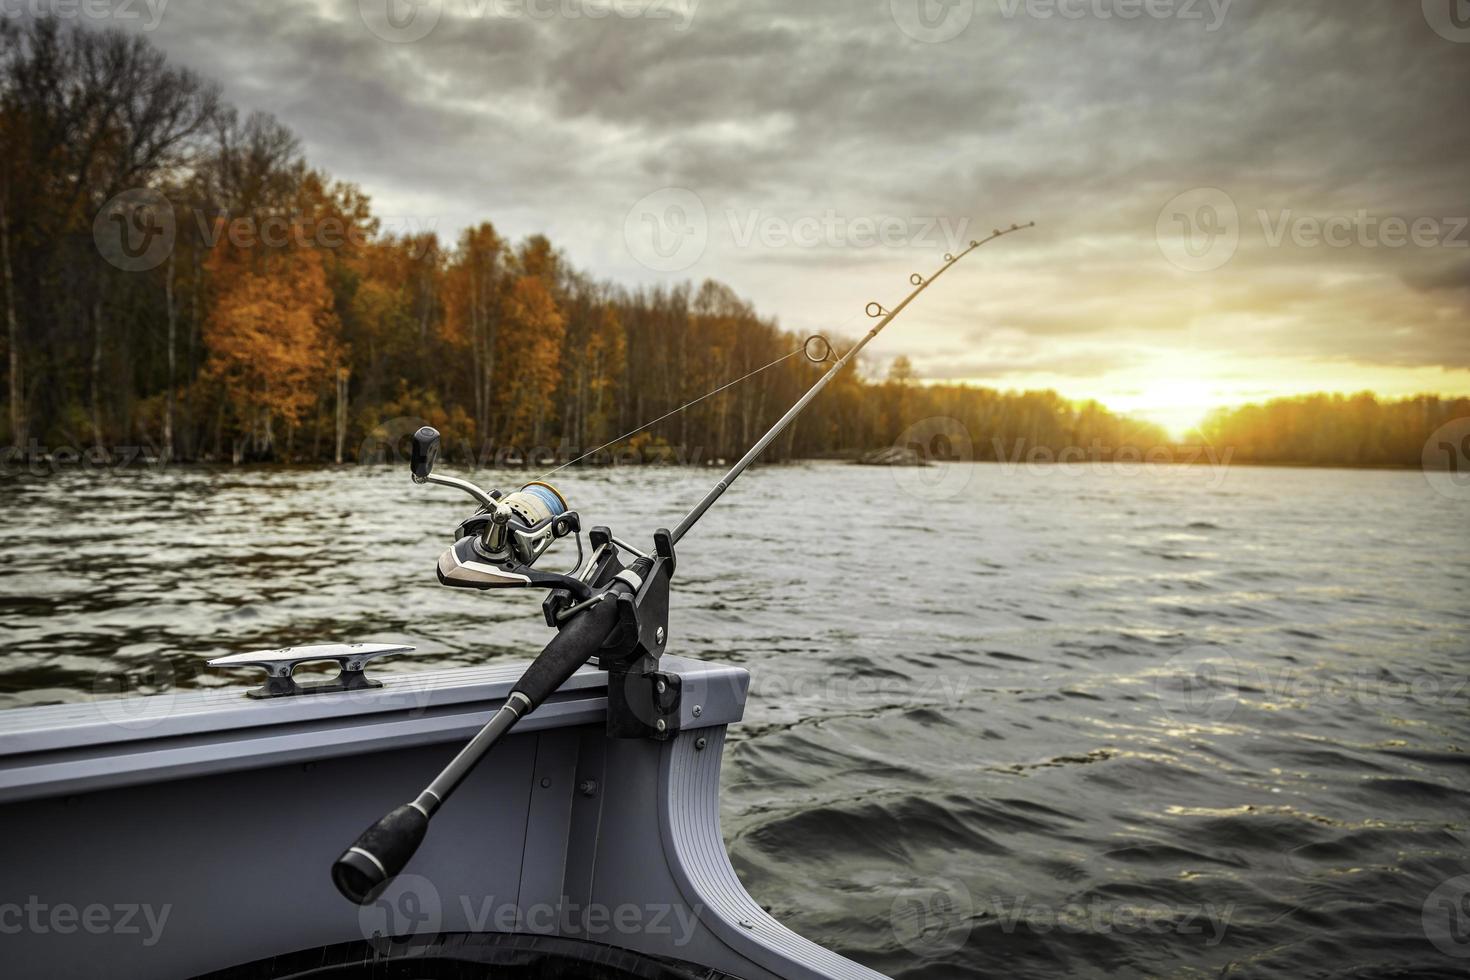 vara de pescar no barco. estação do outono. vara de pescar no barco, hora do pôr do sol. lindas cores de outono. uma vara de pescar é uma vara longa e flexível usada pelos pescadores para pescar. foto